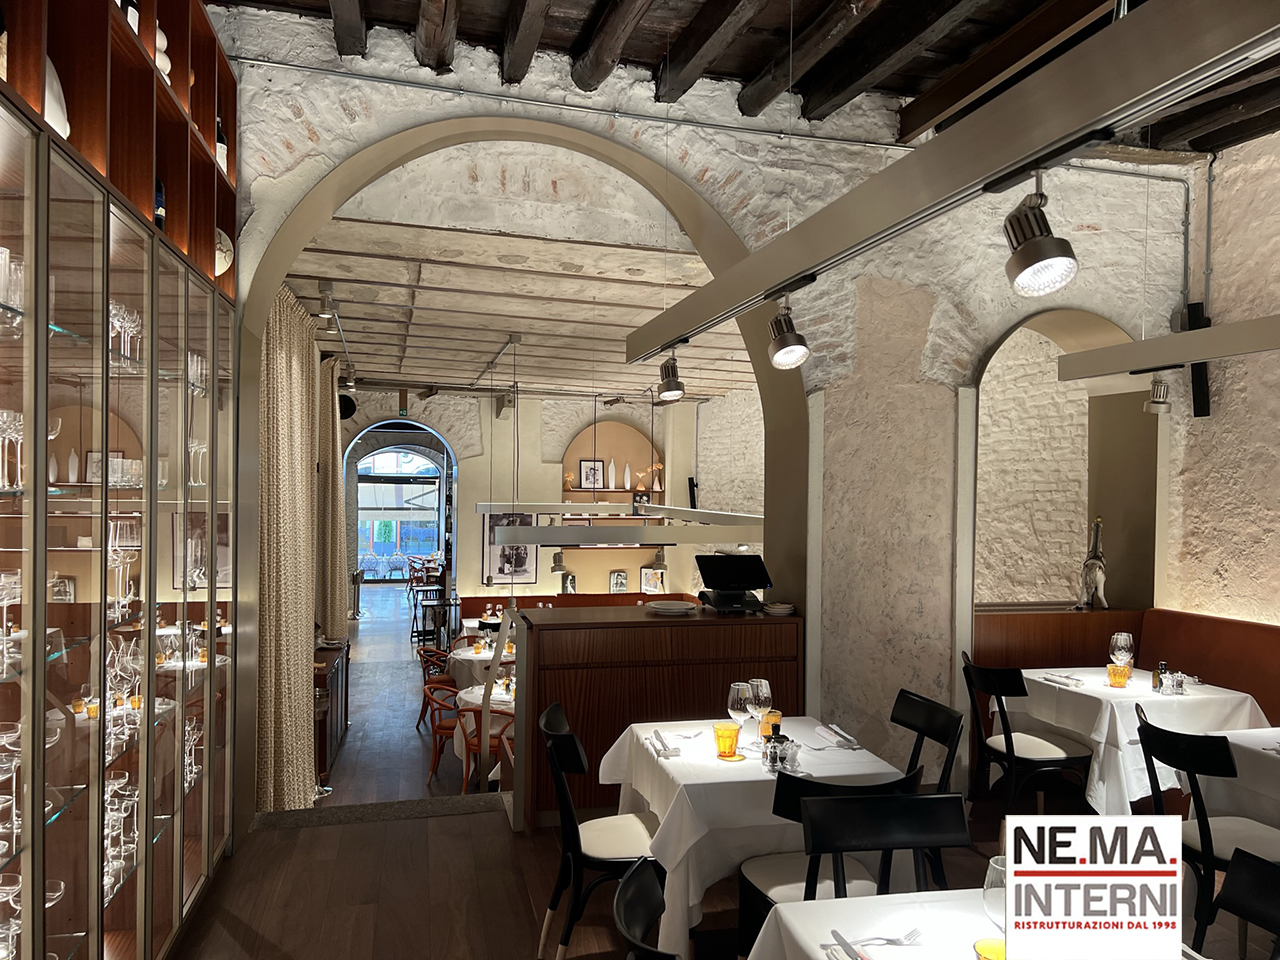 Ristrutturazione e Restauro ristorante Pizzeria “CASA FIORI CHIARI” nella centralissima Brera – Milano